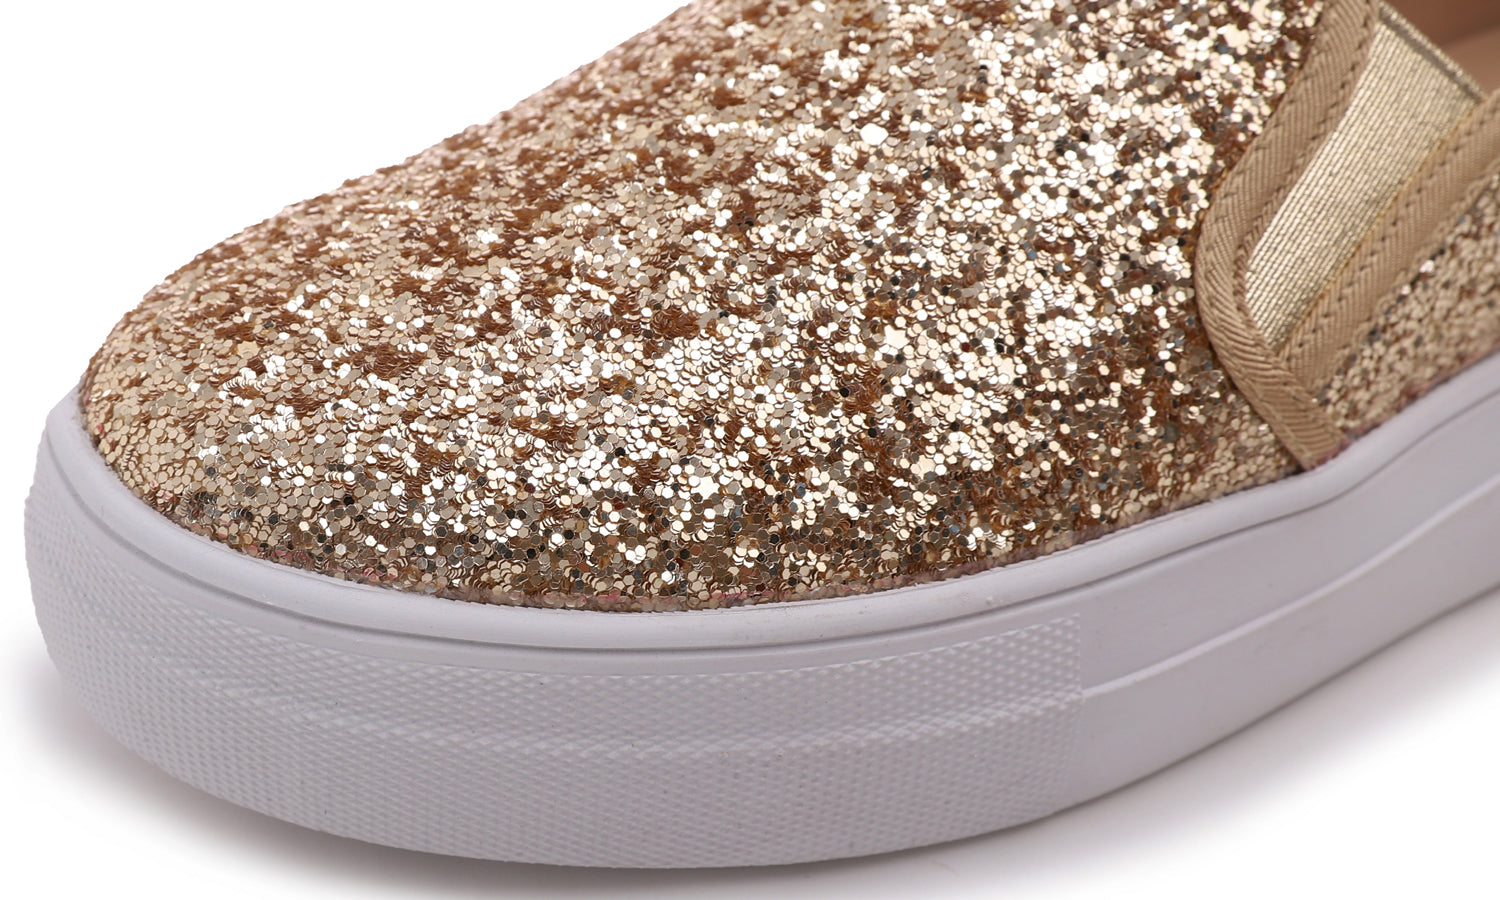 Feversole Women's Glitter Gold Platform Slip On Sneaker Casual Flat Loafers